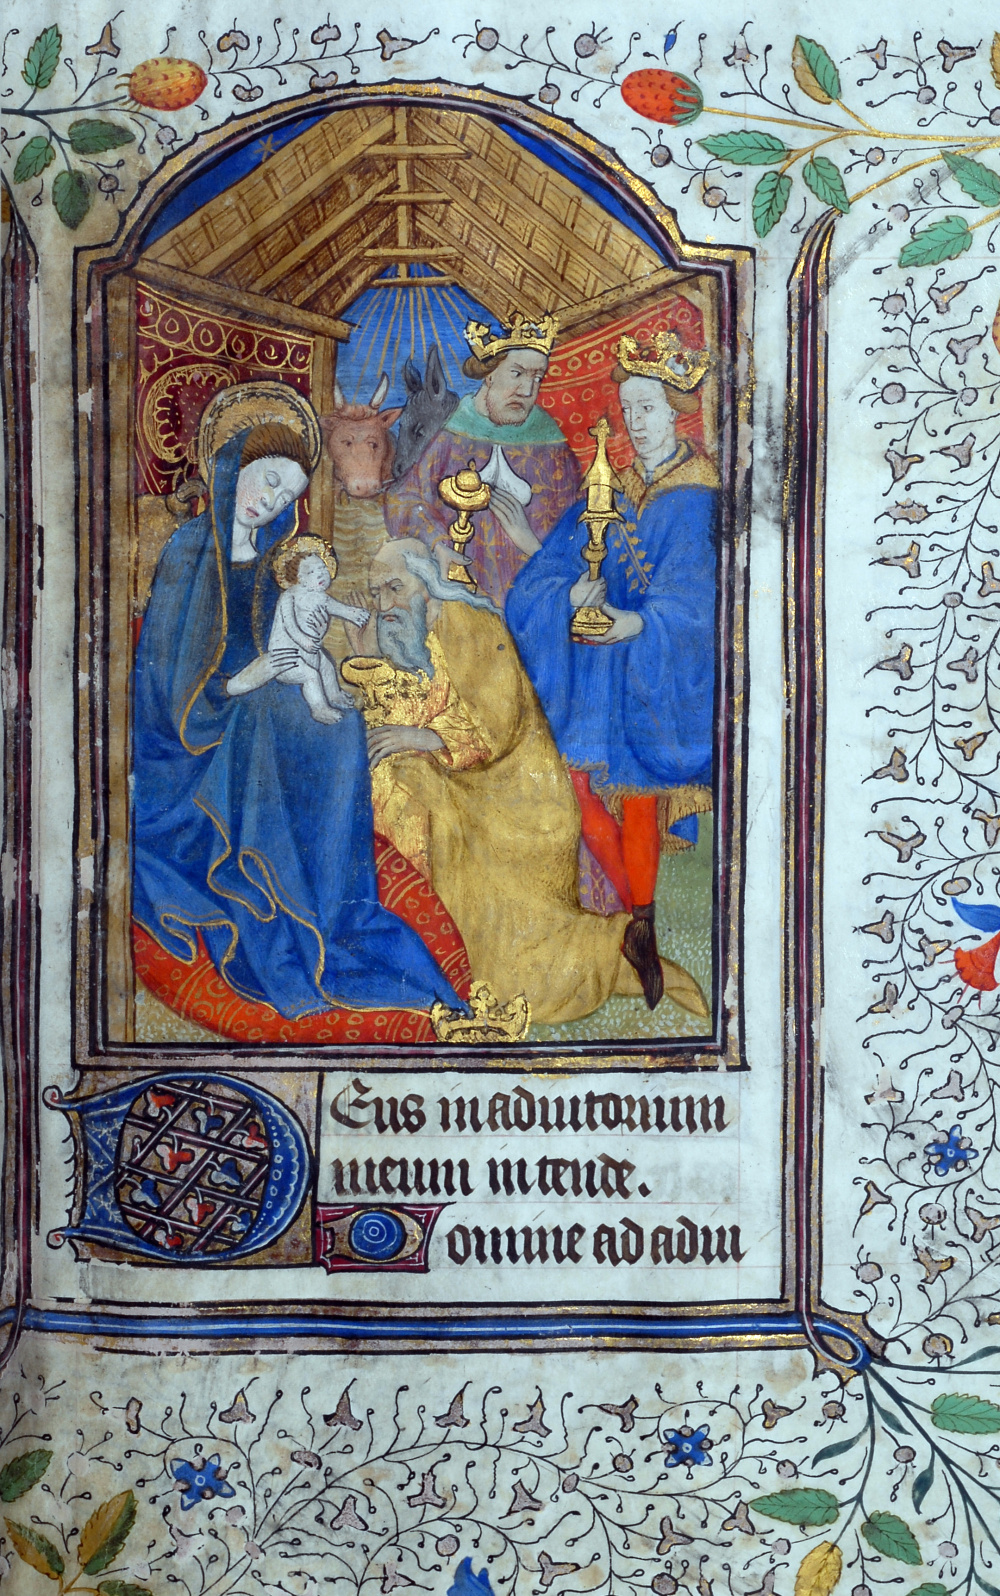 Heures à l'usage de Rome (15e siècle) : L'Adoration des rois mages. © Bibliothèque publique et universitaire de Valence.